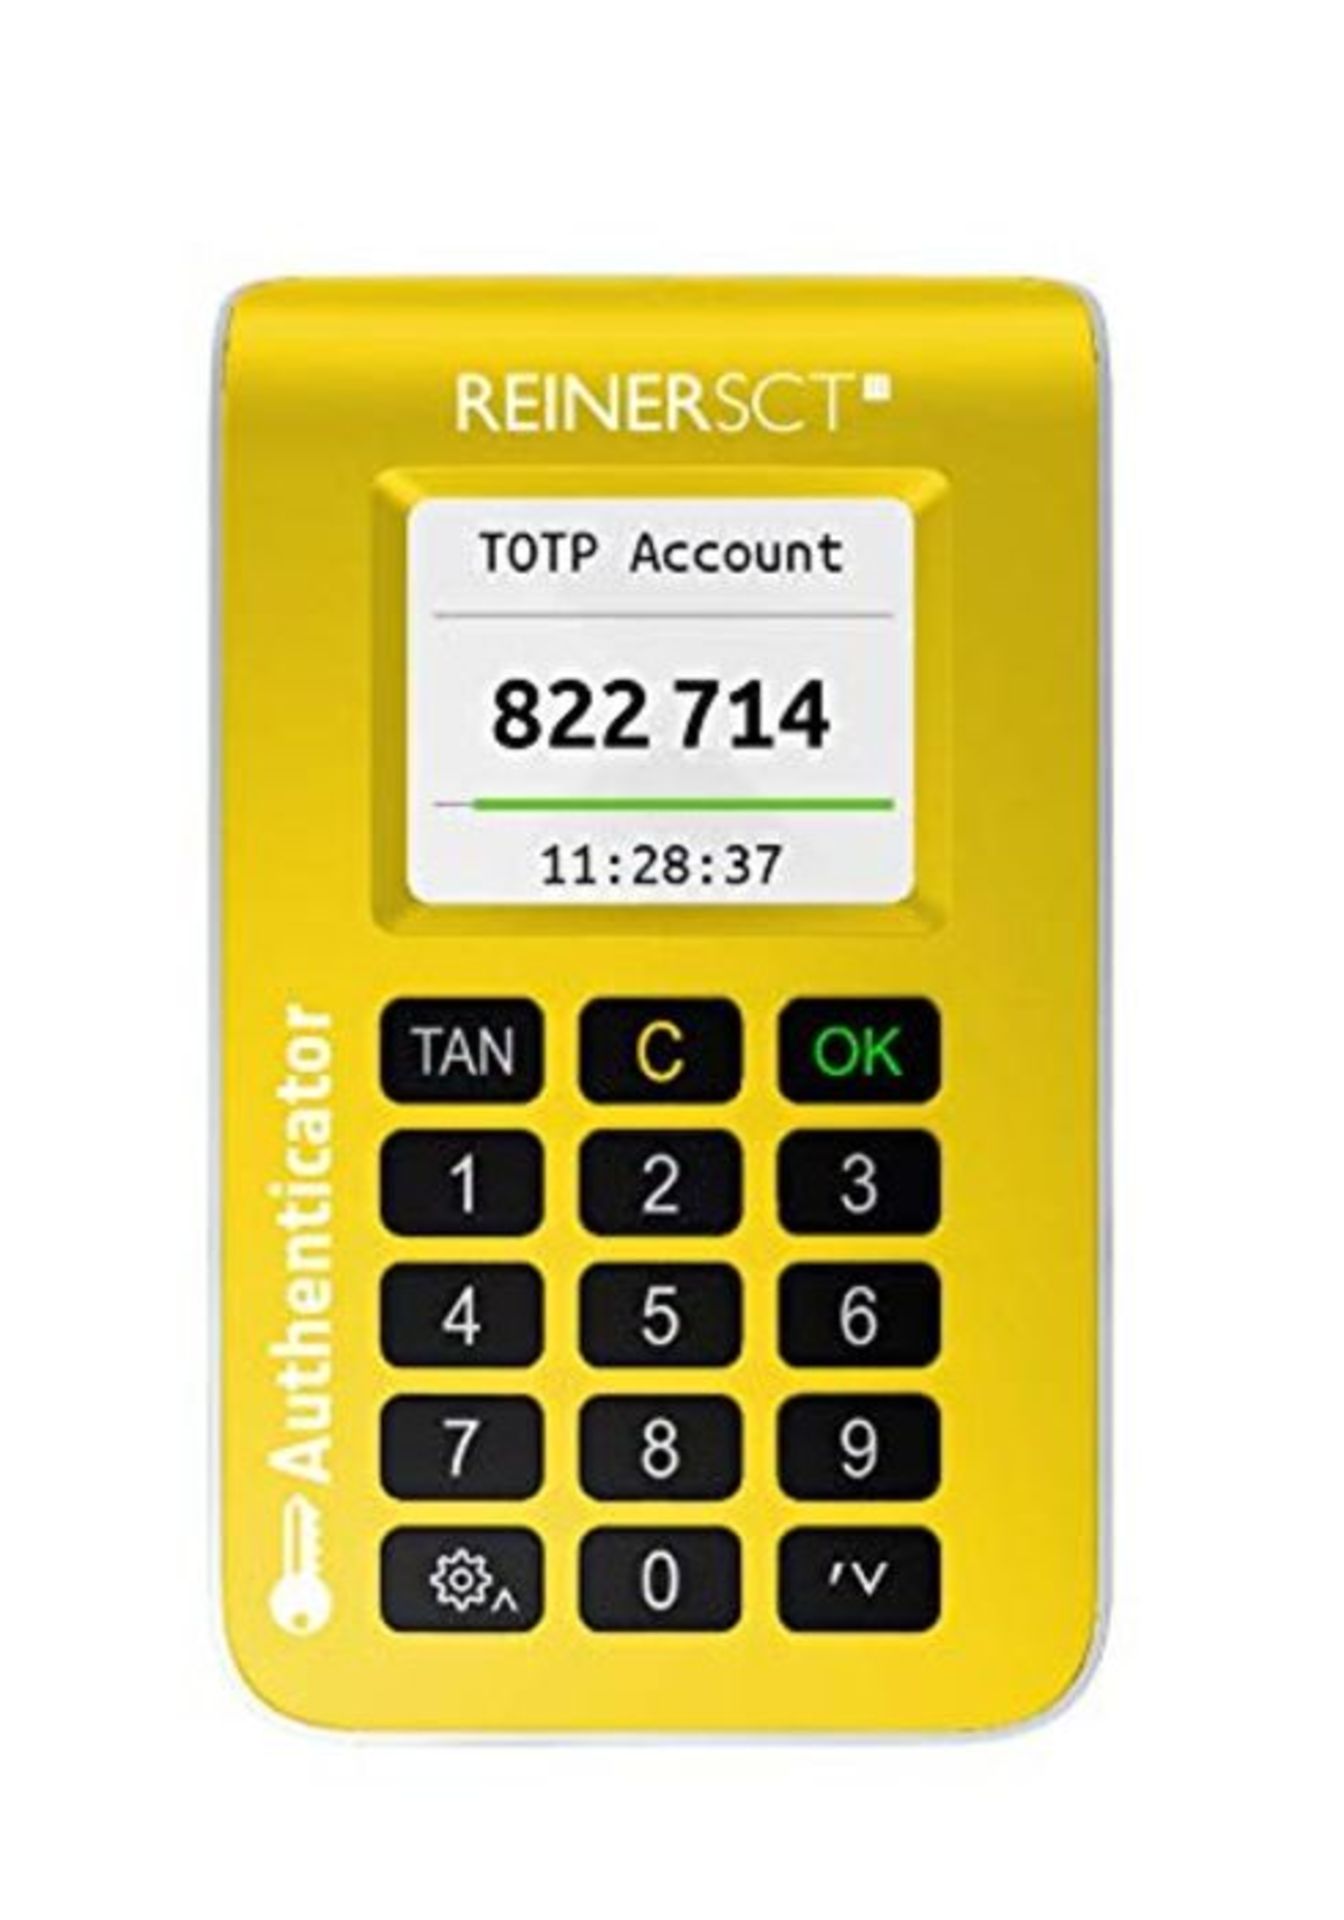 REINER SCT Authenticator â¬  Hardware fÃ¼r Zwei-Faktor-Authentisierung | TOTP-G